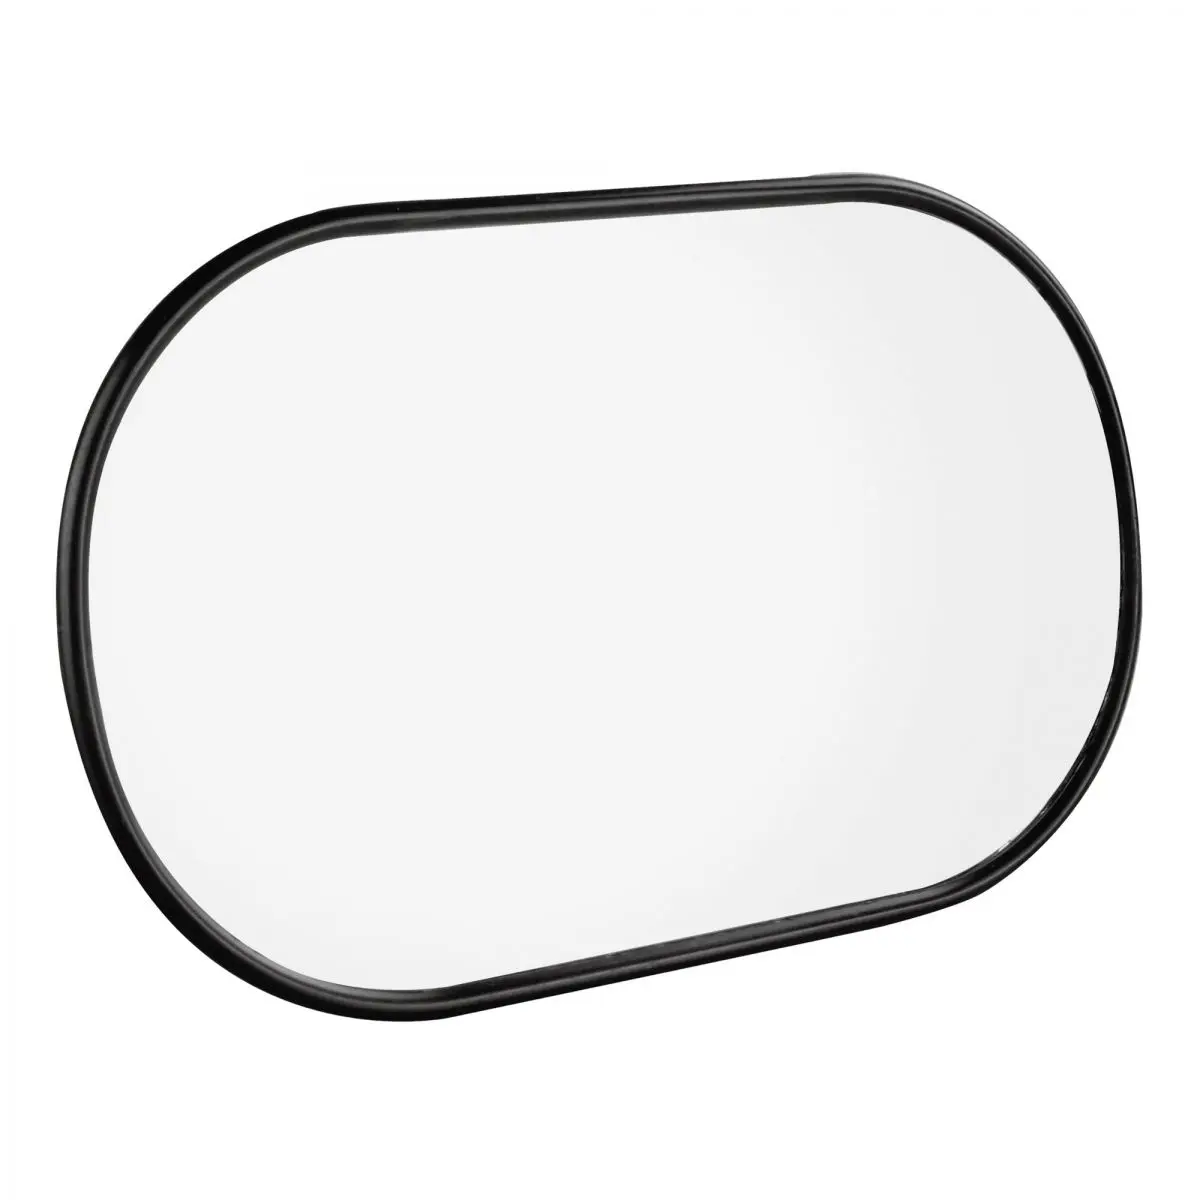 Cap oglinda - standard, 120 x 180 mm